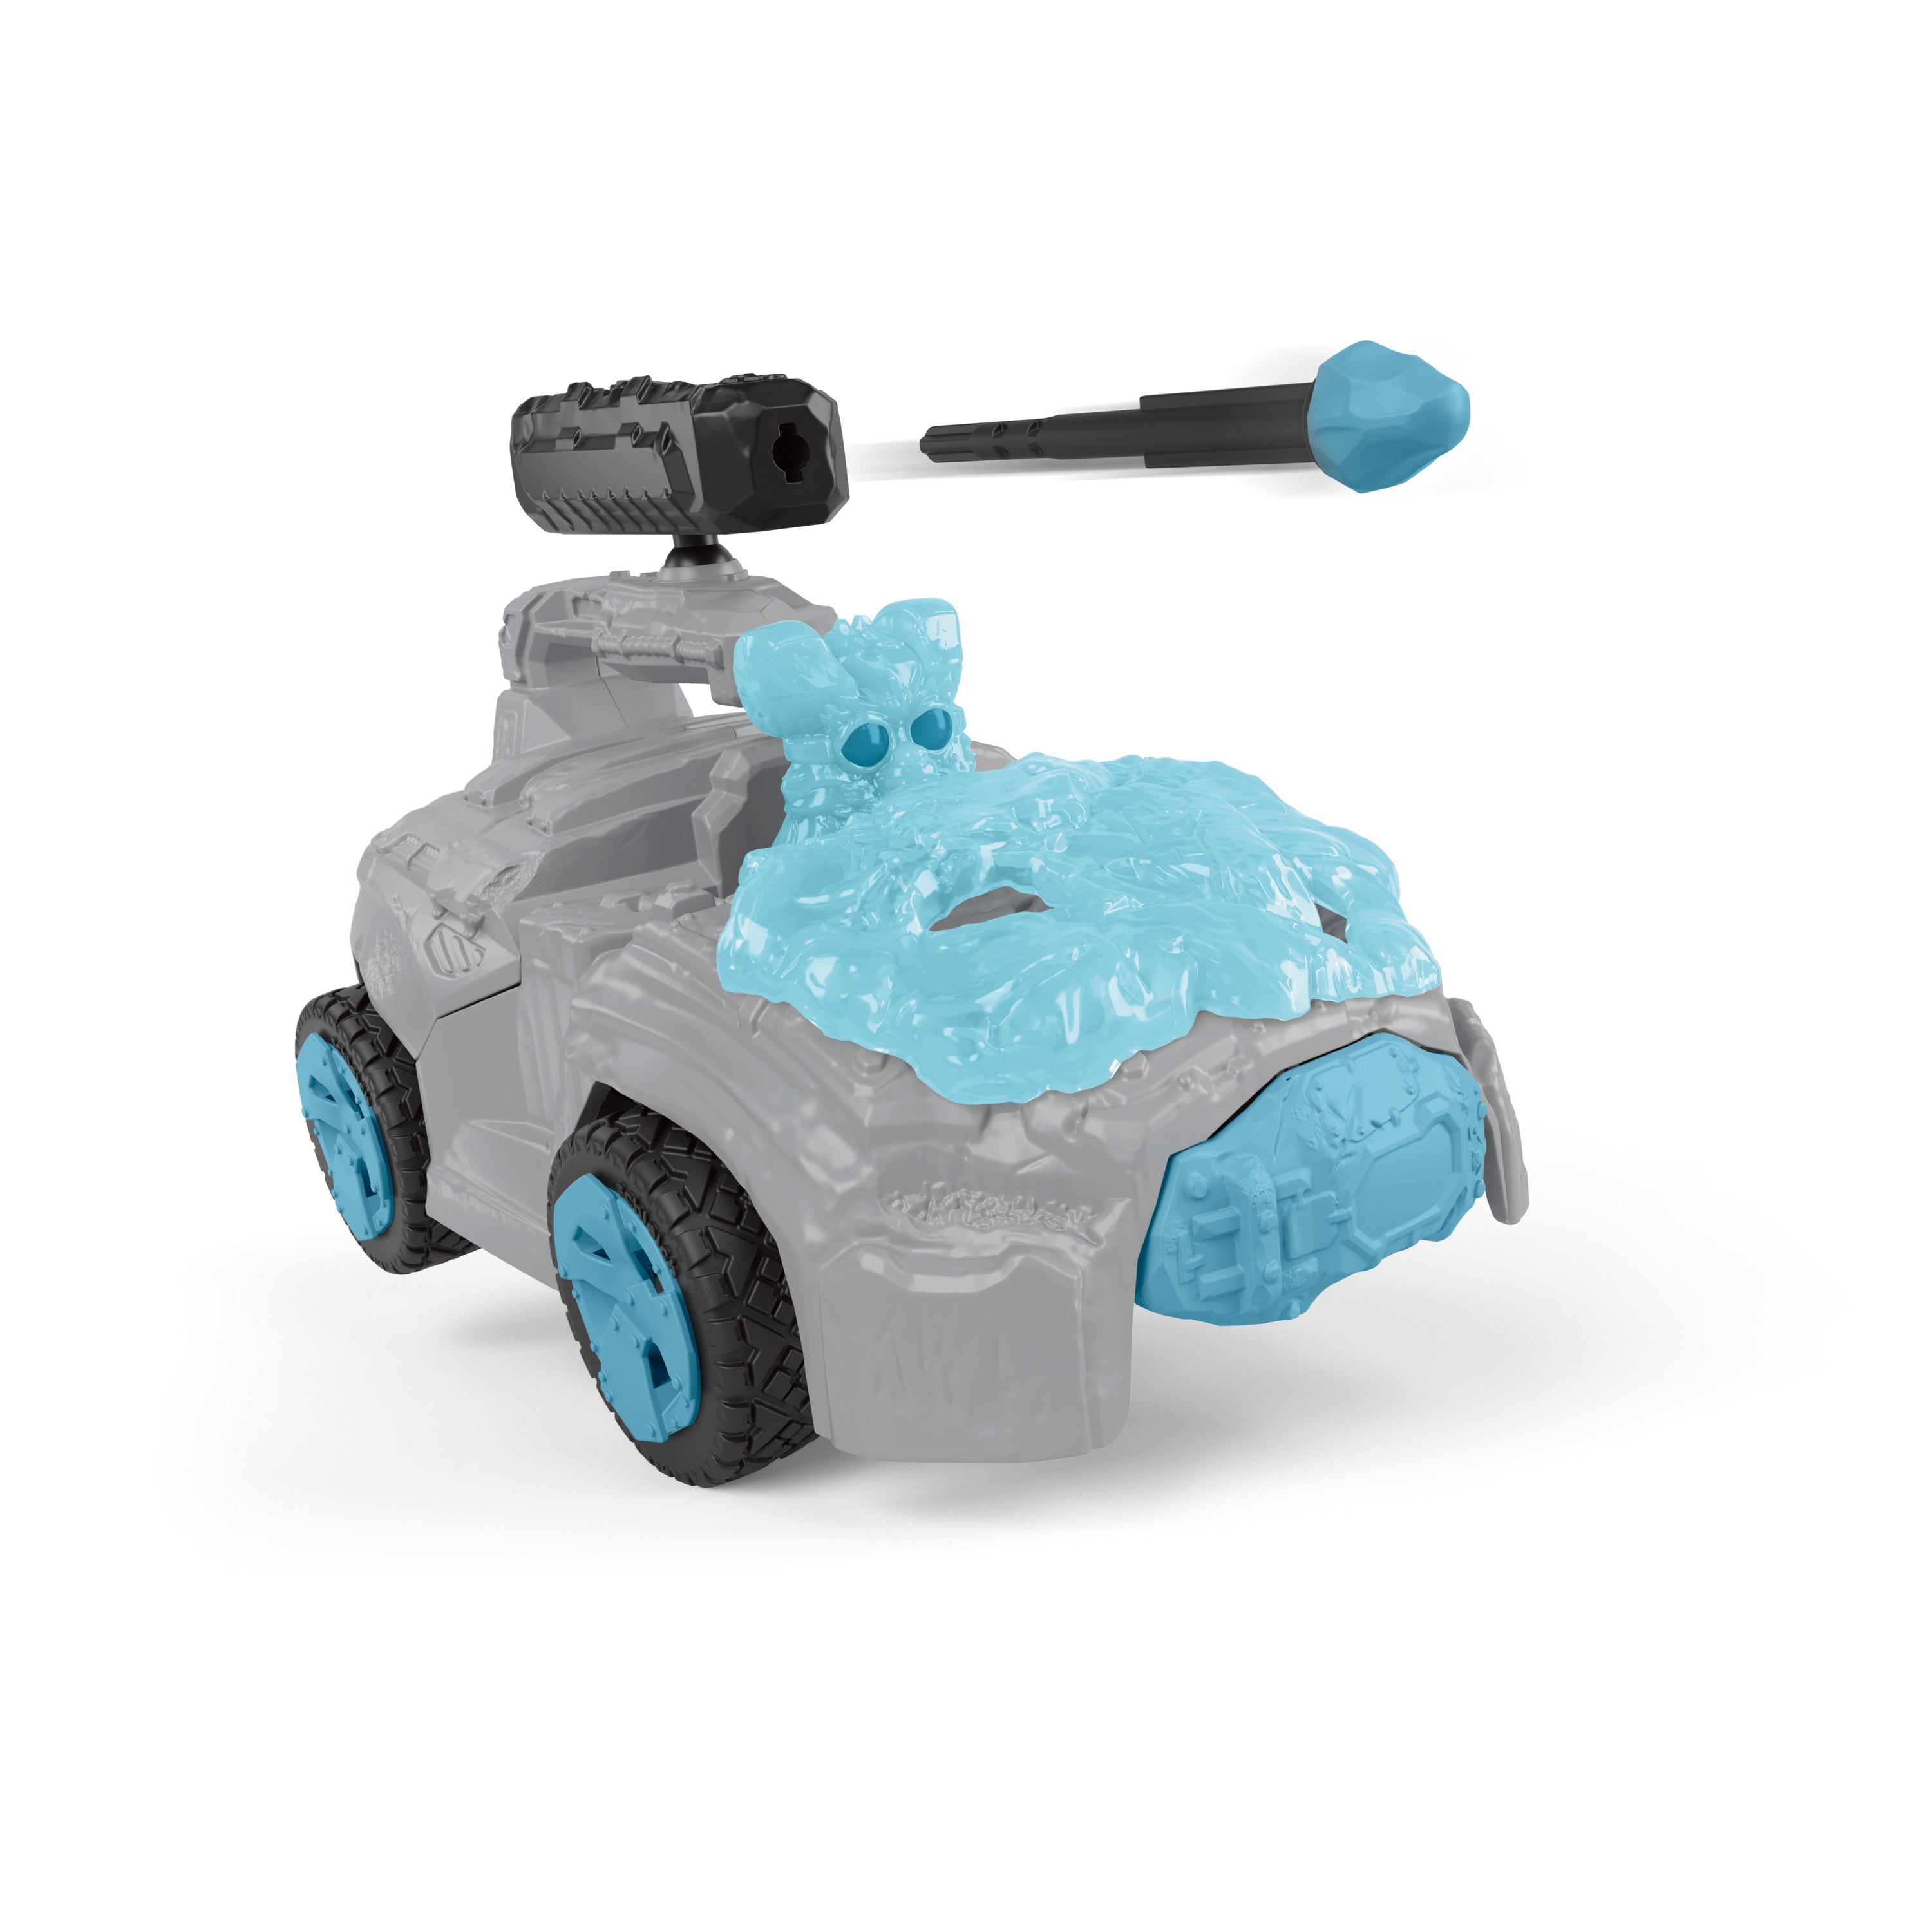 Crashmobil de hielo con minicriatura